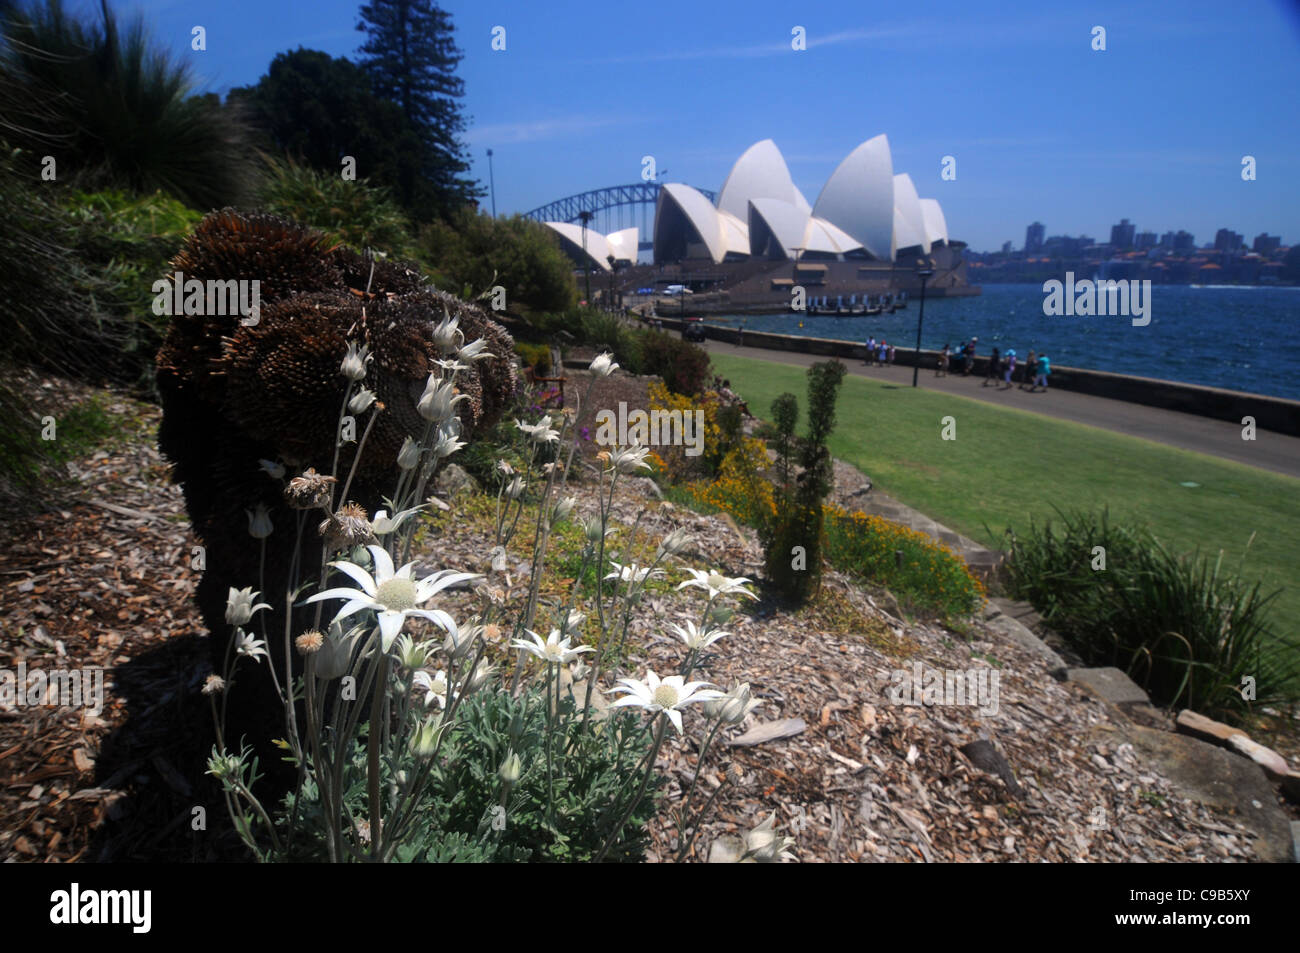 Fiori di flanella (Actinotus helianthi) e l'Opera House di Sydney, NSW, Australia. N. PR Foto Stock